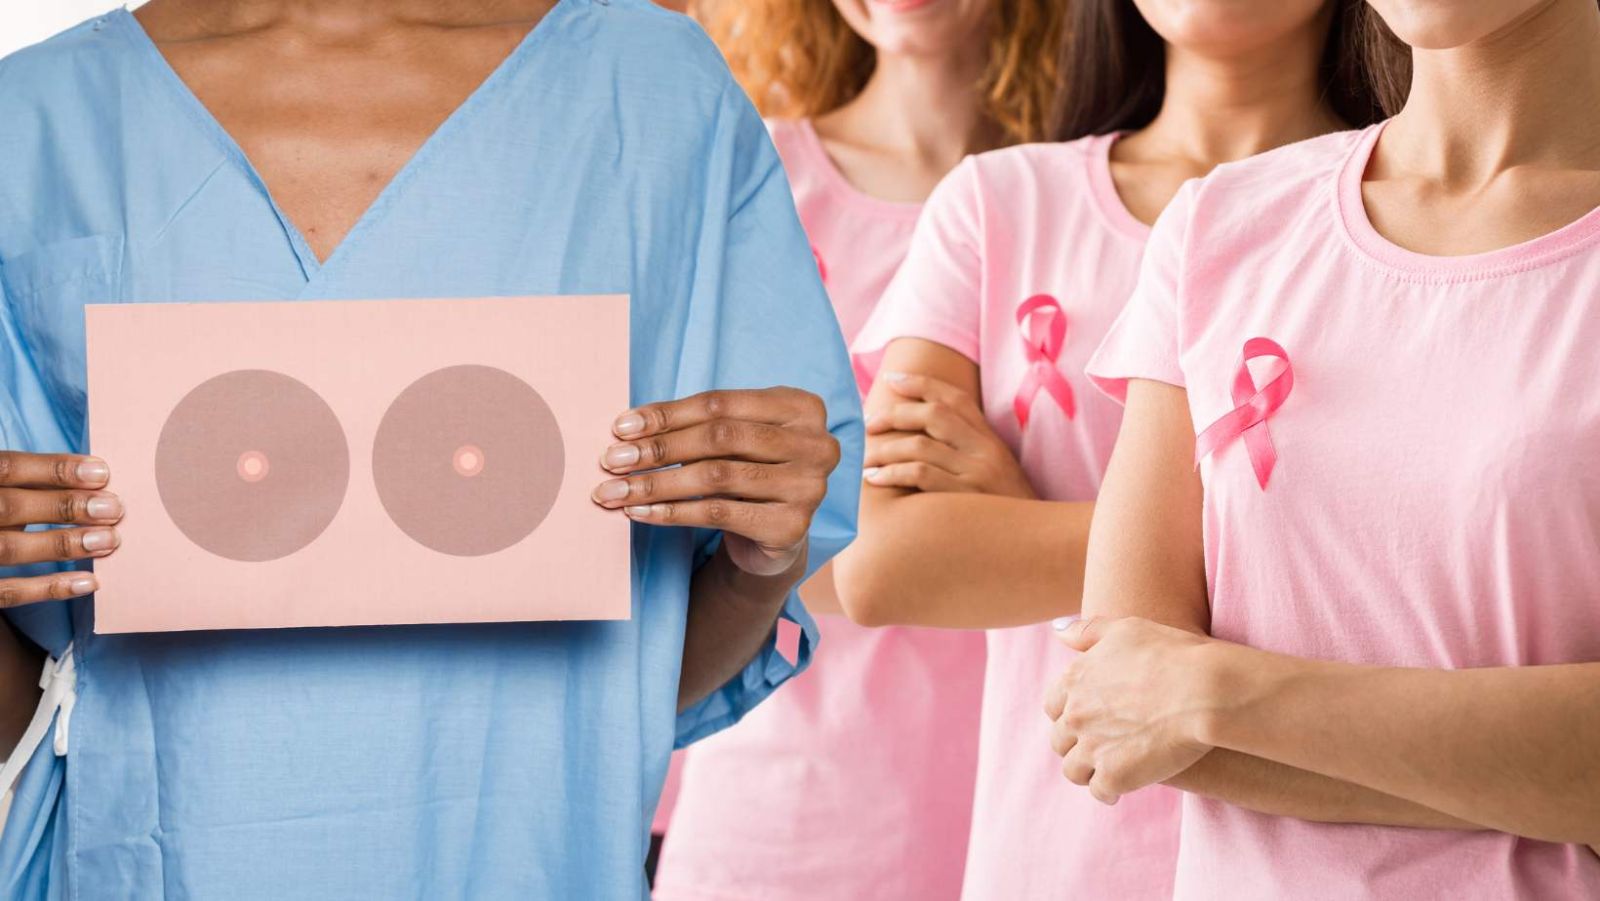 Ces 12 habitudes réduisent jusqu'à 50% le risque de cancer du sein, prouvées par des études